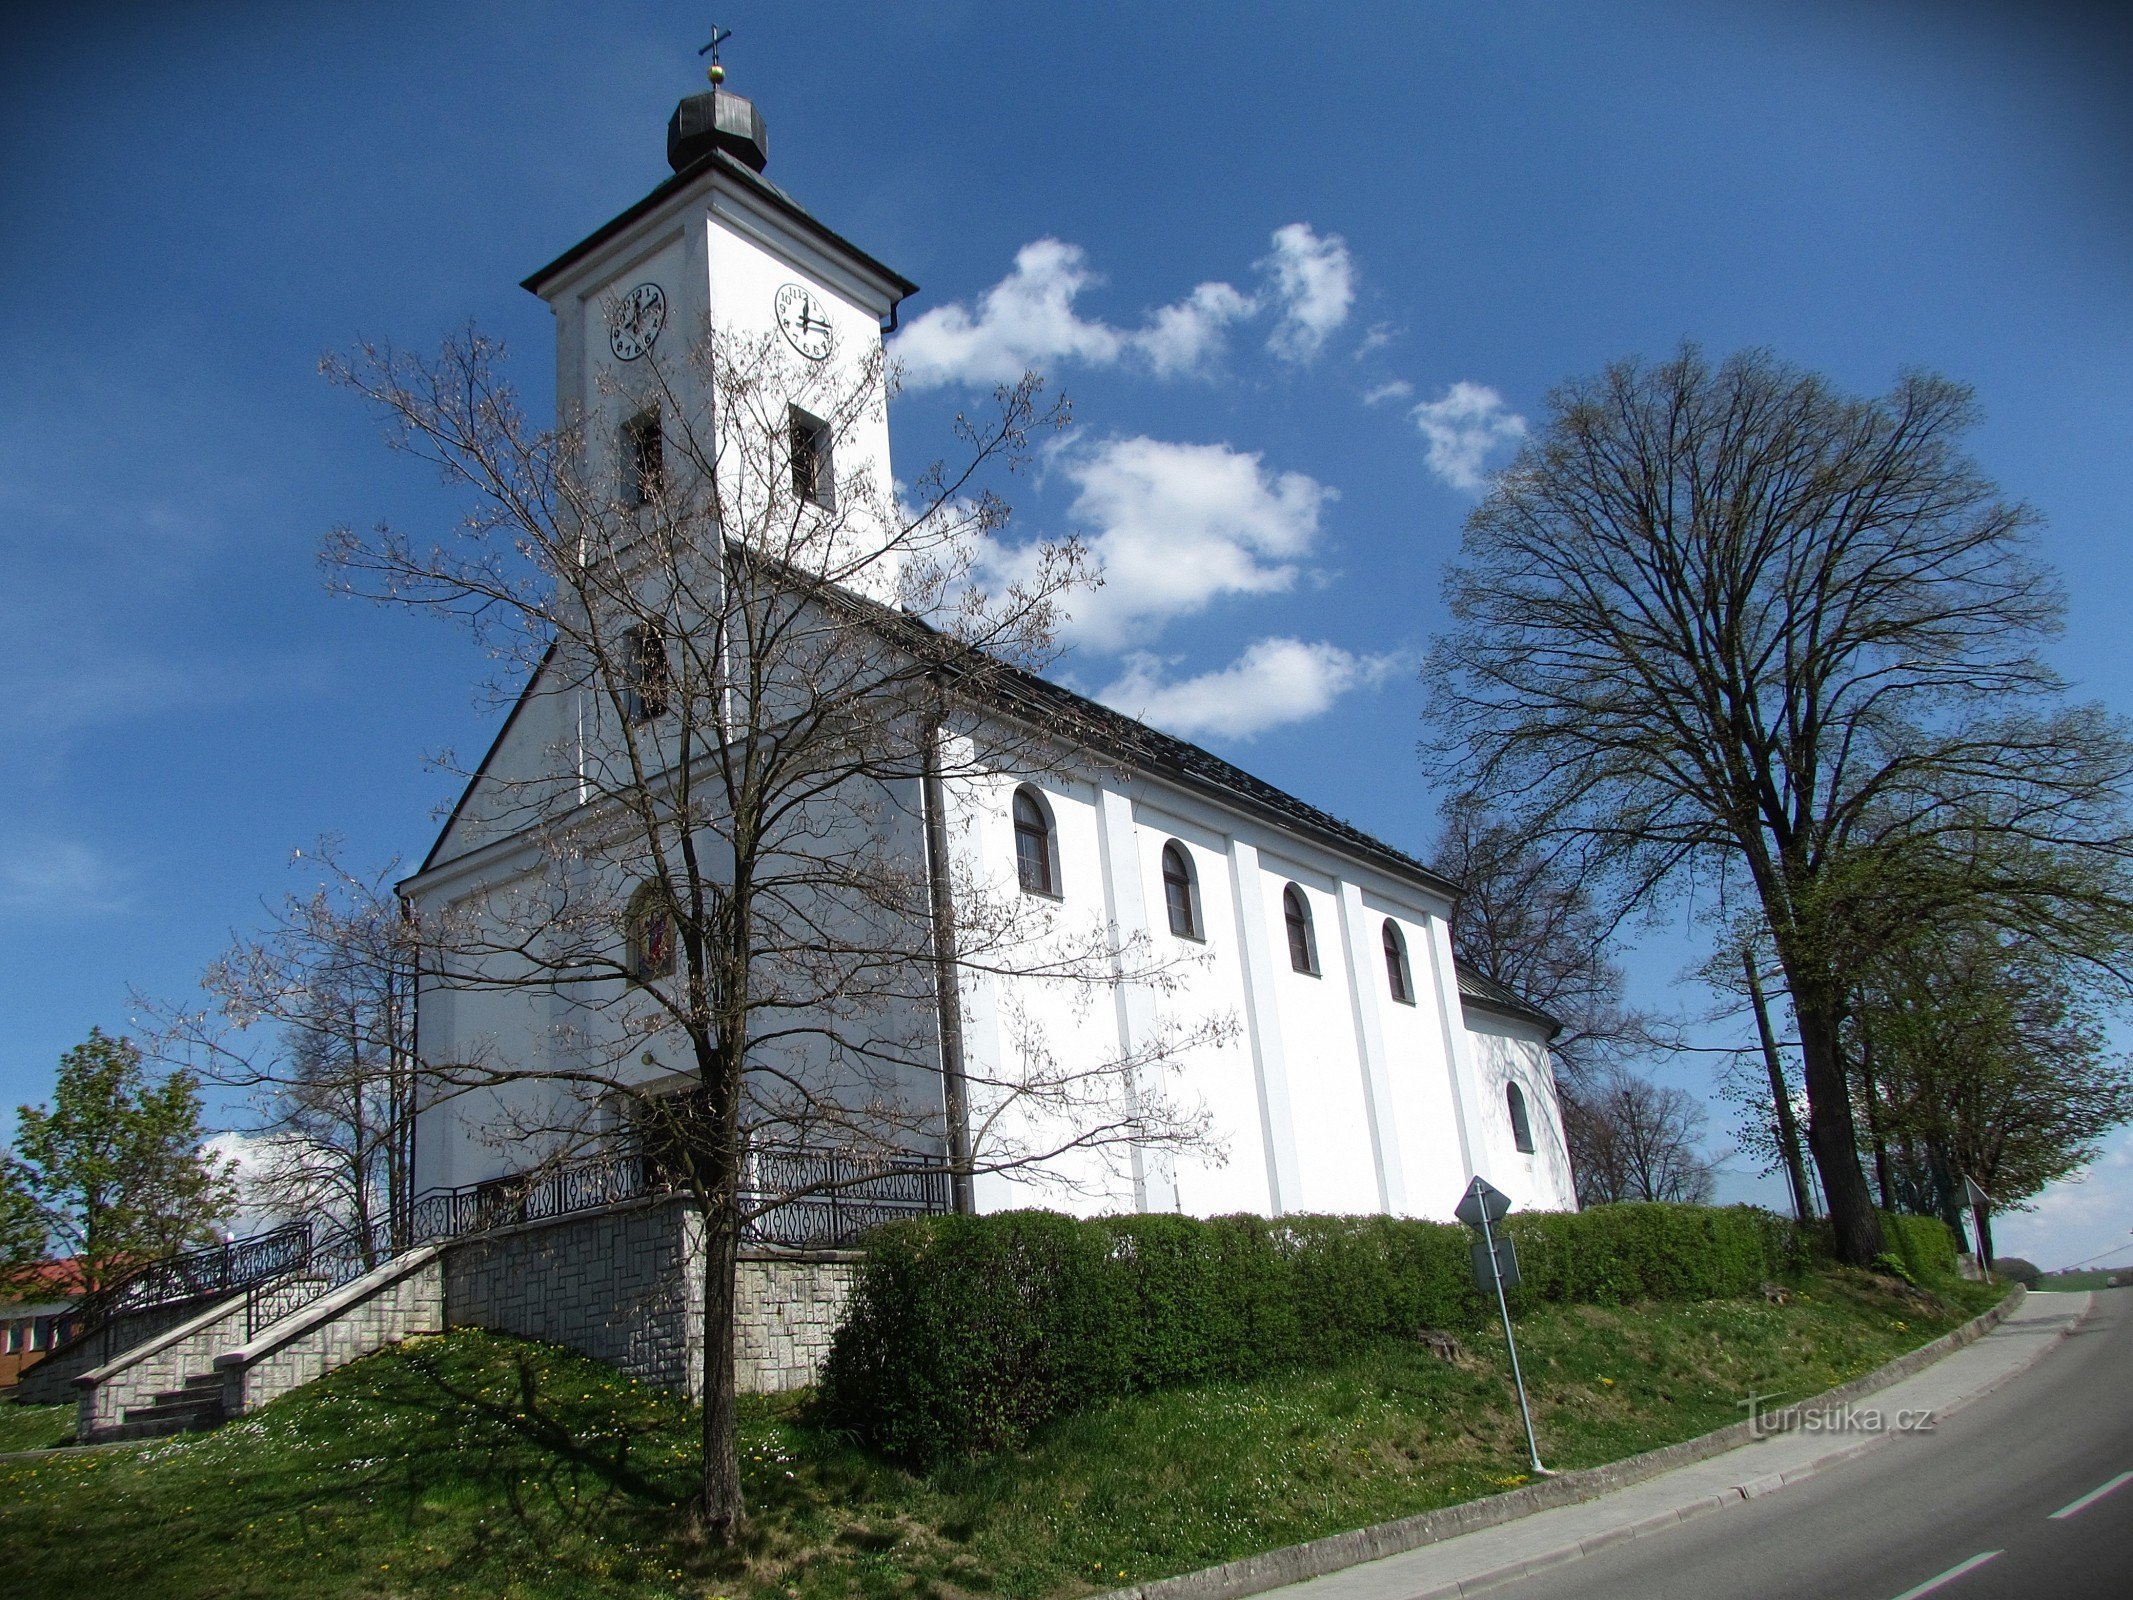 Slopné - chiesa di San Rocco